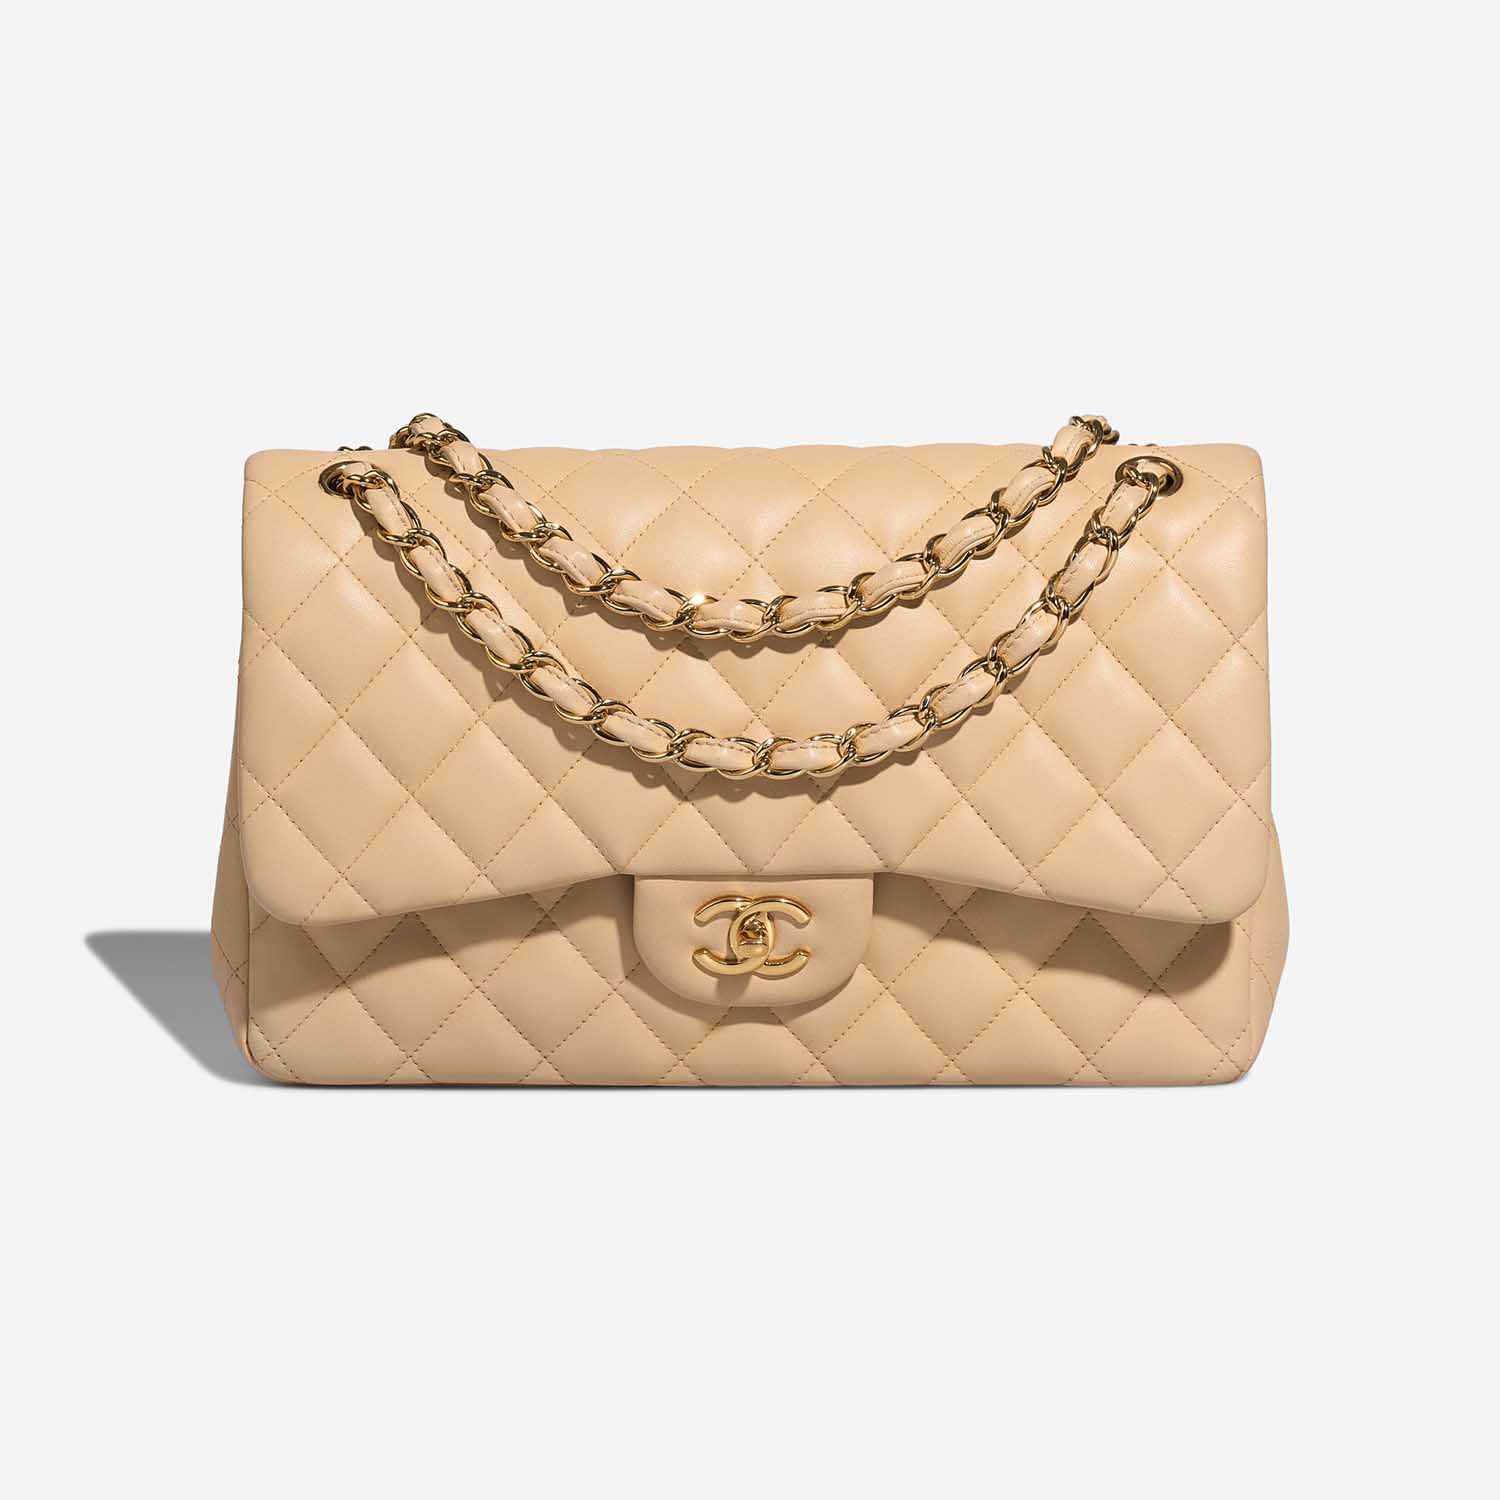 Chanel Timeless Jumbo Beige Front S | Verkaufen Sie Ihre Designer-Tasche auf Saclab.com